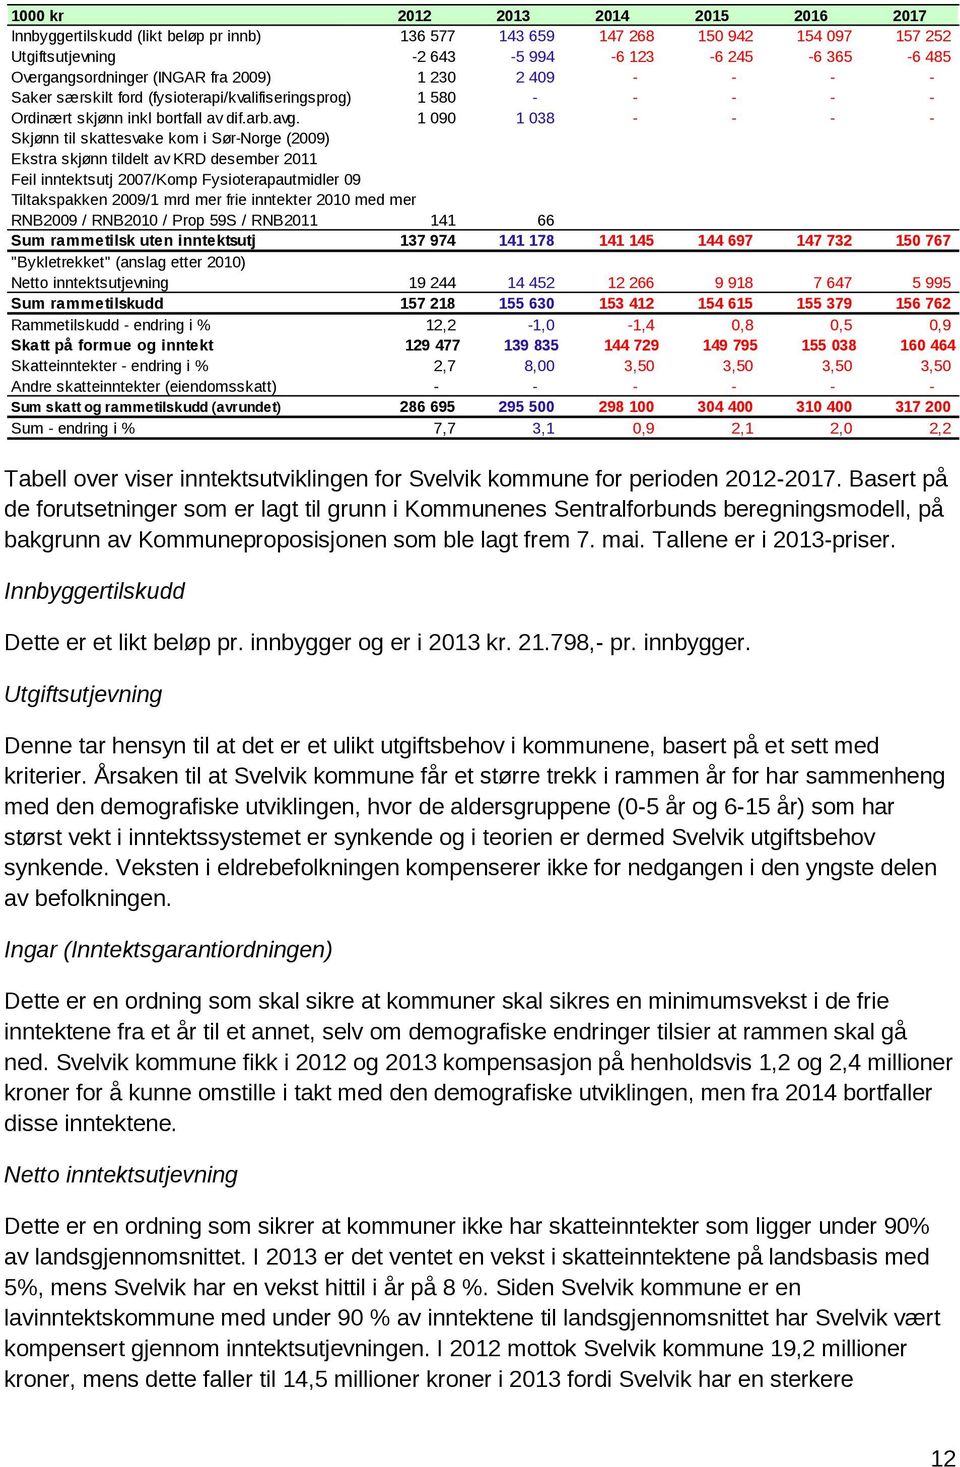 1 090 1 038 - - - - Skjønn til skattesvake km i Sør-Nrge (2009) Ekstra skjønn tildelt av KRD desember 2011 Feil inntektsutj 2007/Kmp Fysiterapautmidler 09 Tiltakspakken 2009/1 mrd mer frie inntekter